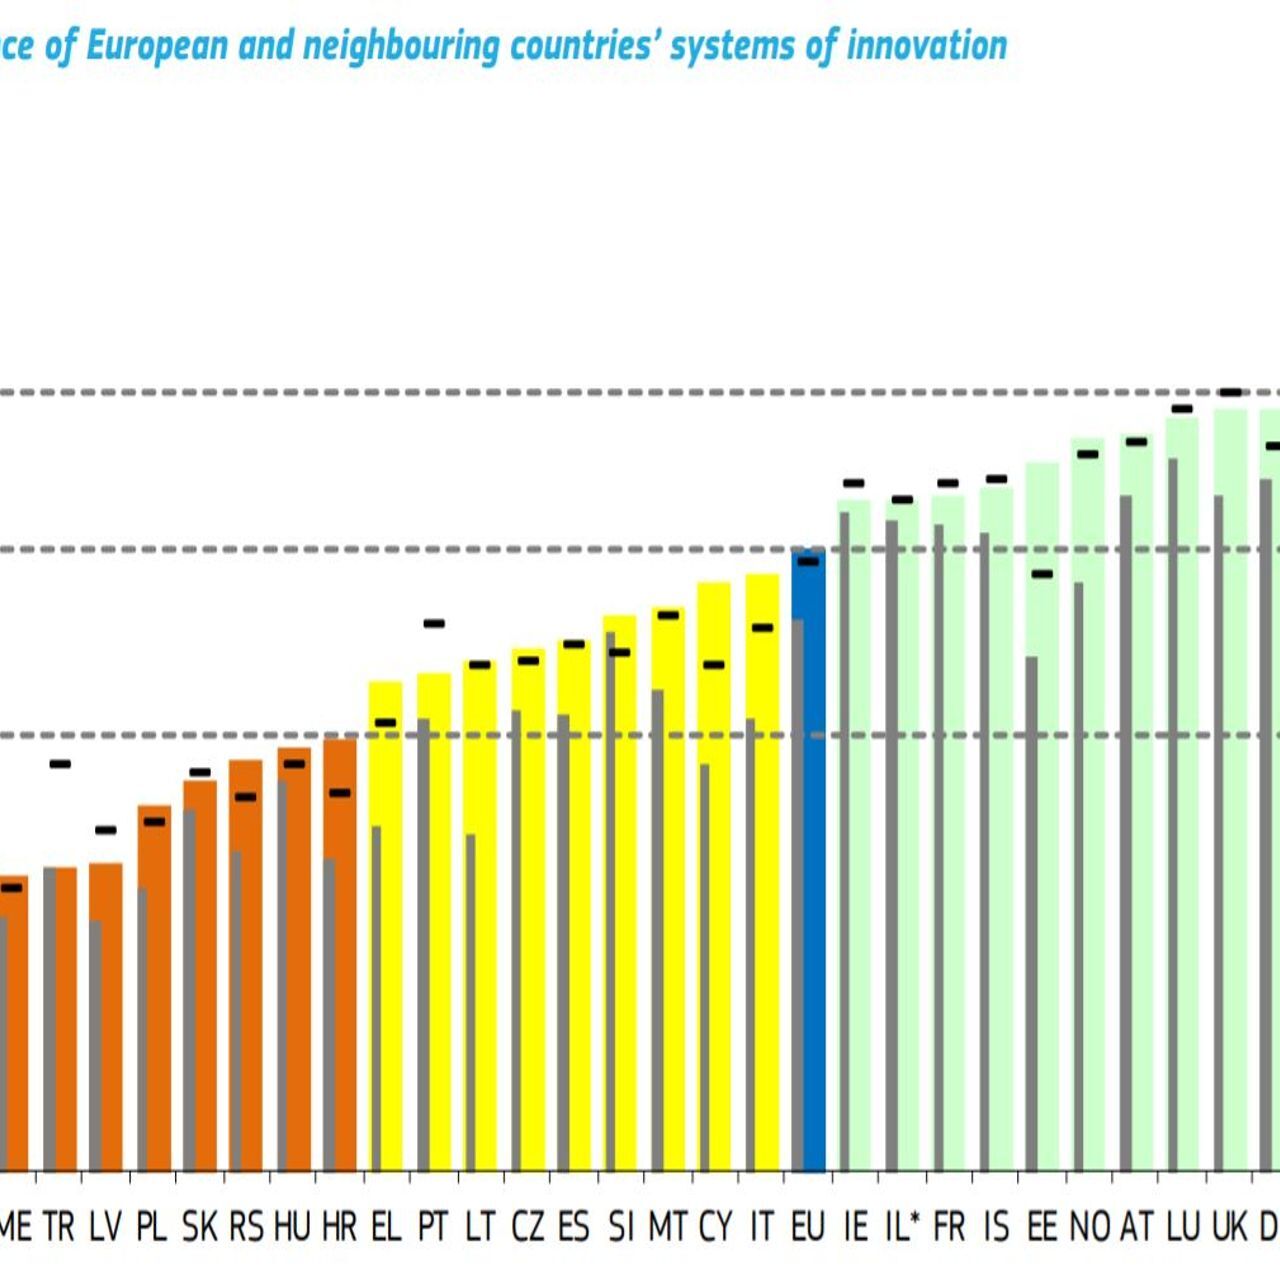 2021 års rankning av innovationsgraden i de europeiska länderna